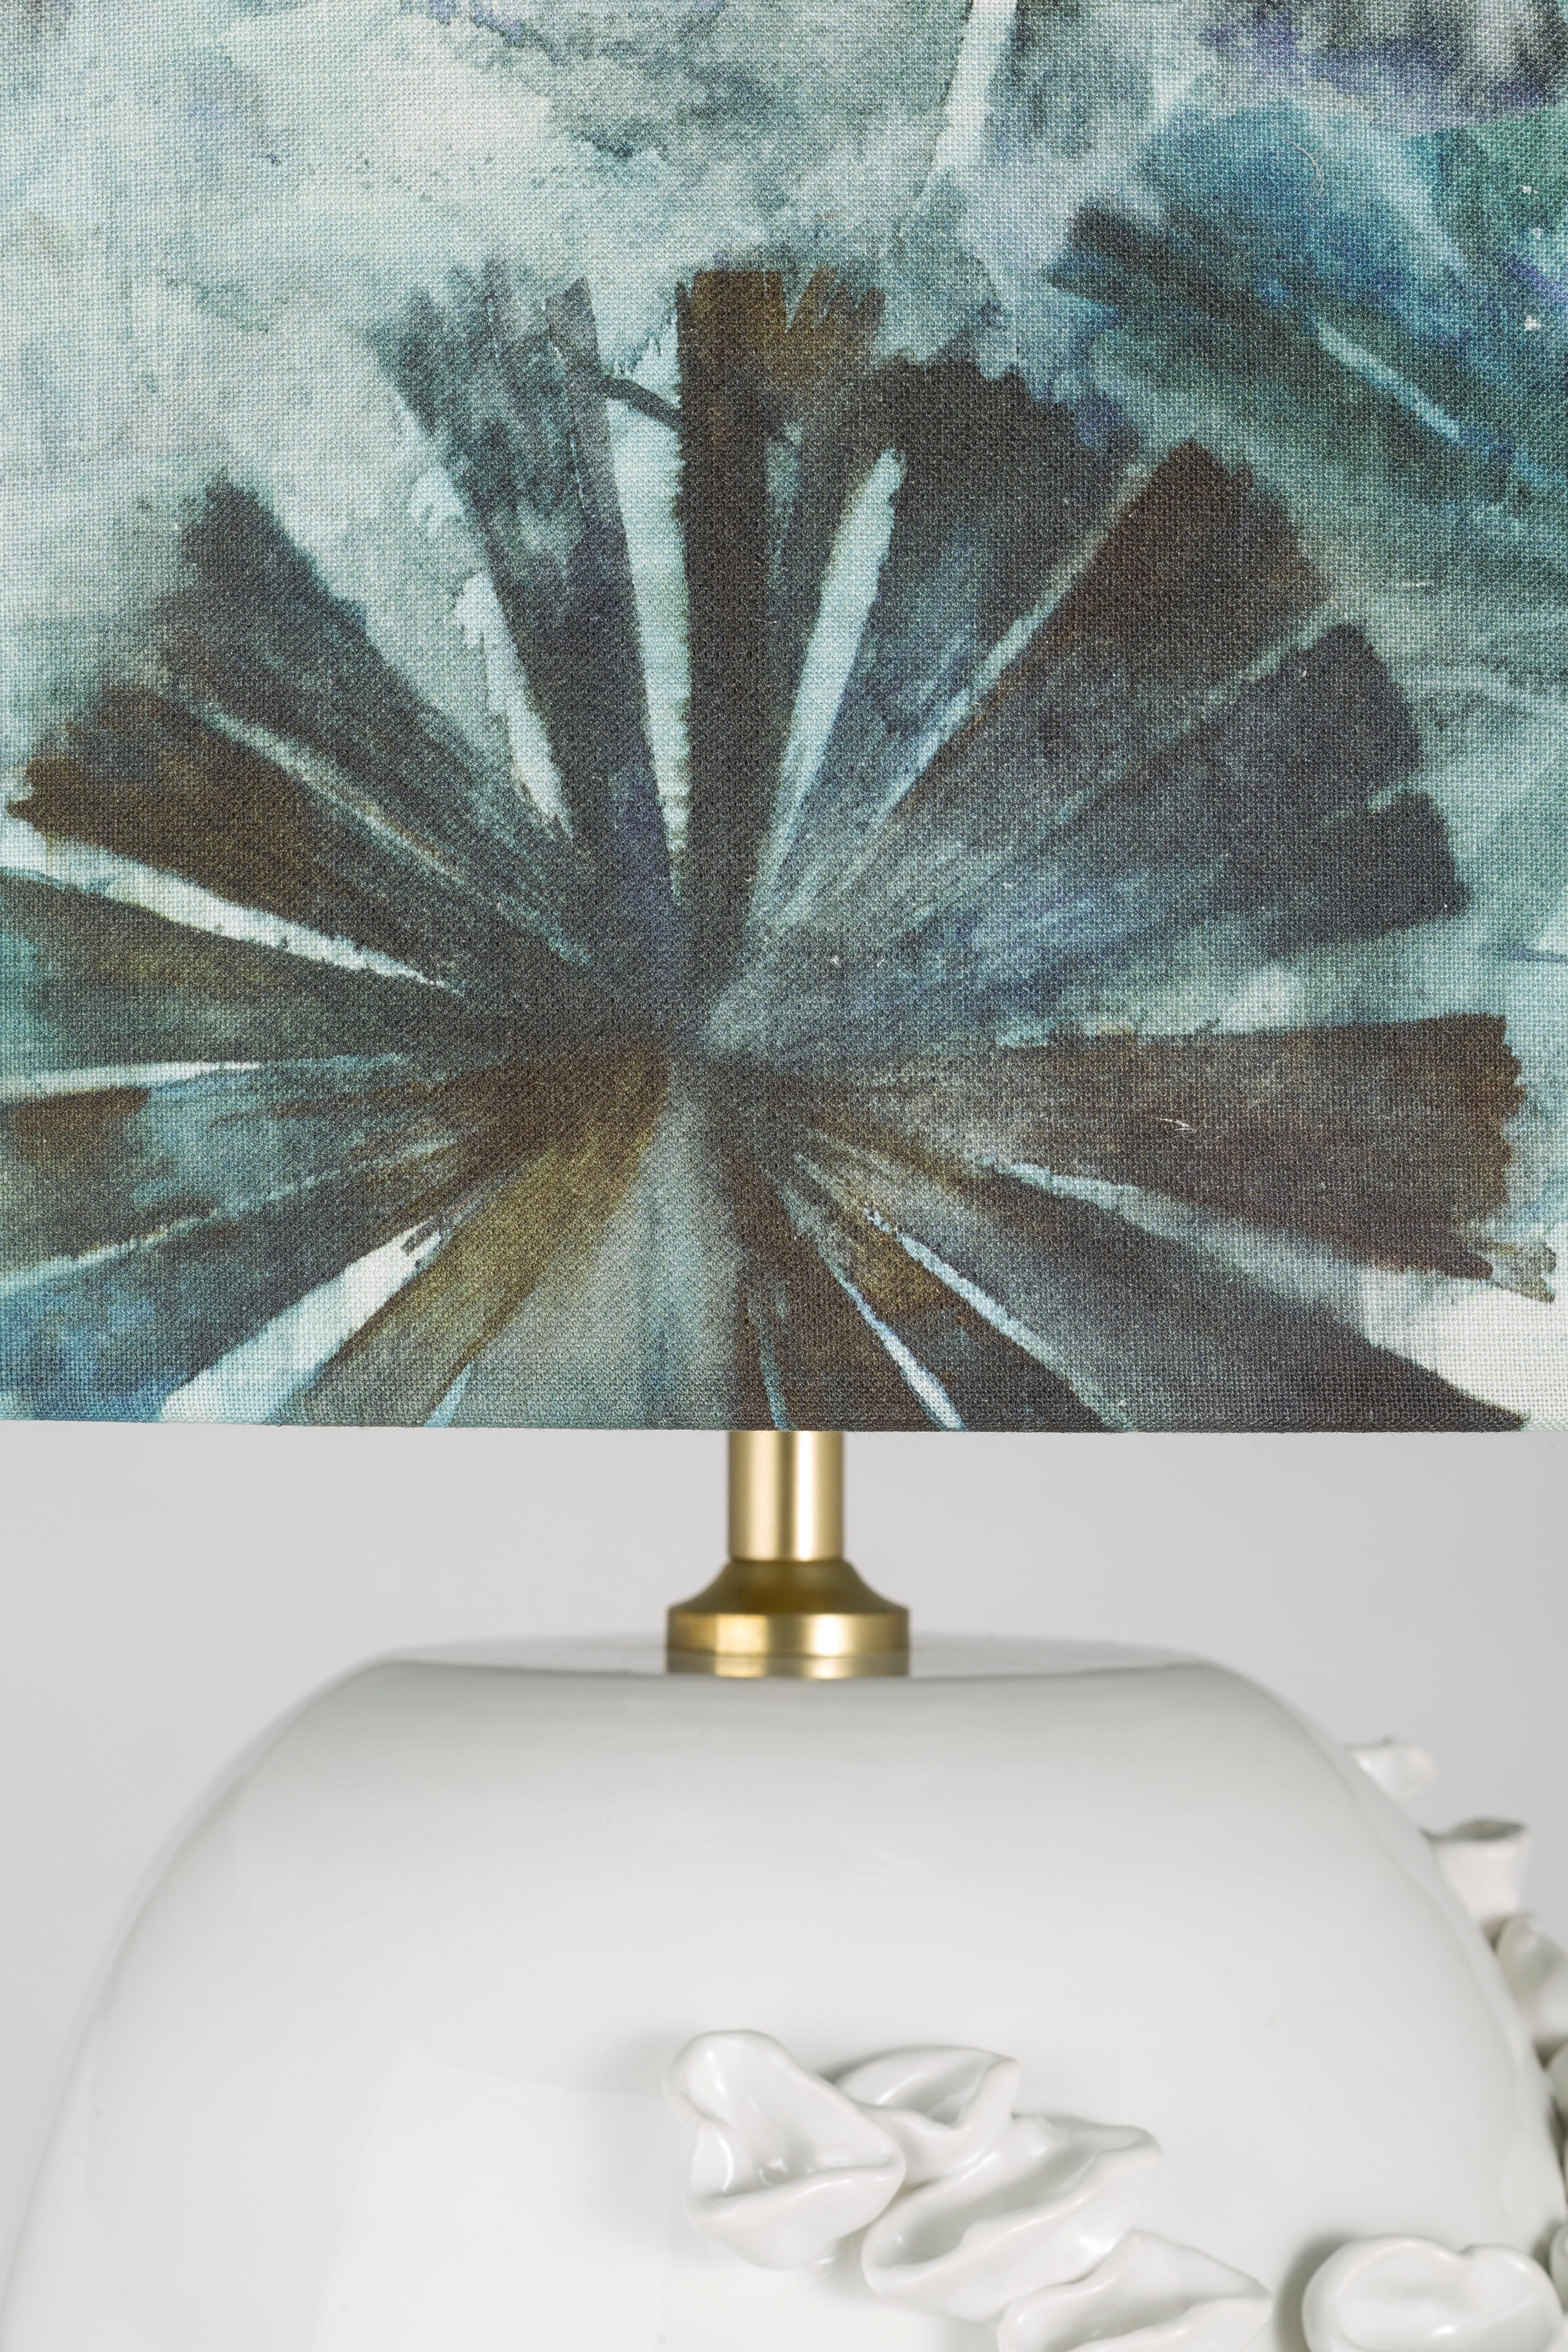 Bei der luxuriösen Serie der Seashell-Tischlampen dreht sich alles um den beeindruckenden Keramiksockel, der vom Mittelmeer inspiriert ist. Das Design bezieht die visuelle und taktile Wahrnehmung des Betrachters mit ein und bringt ihn dazu, die